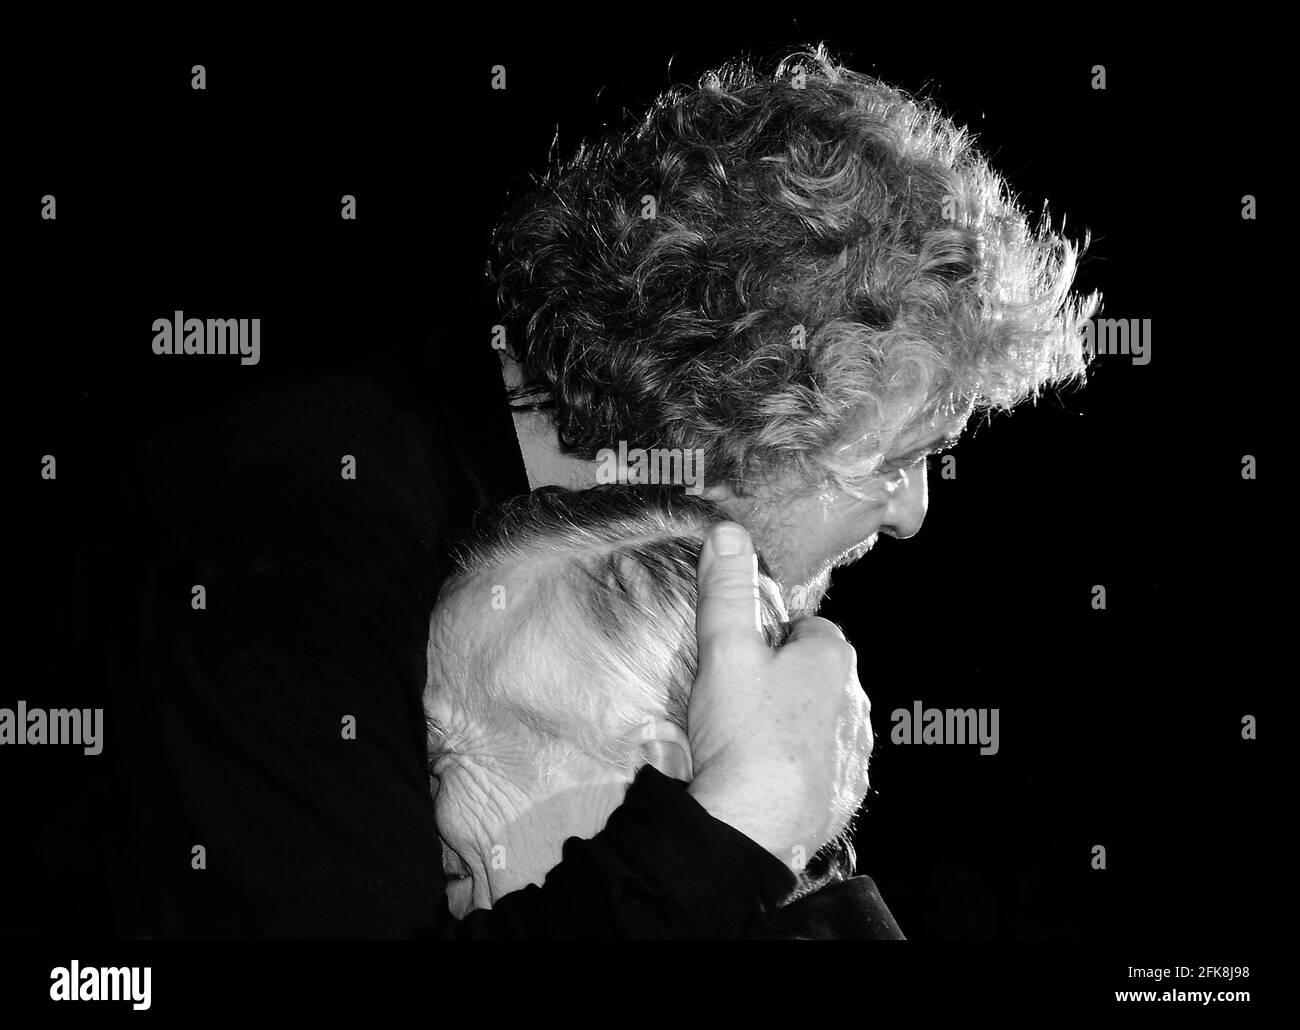 Beppe Grillo embrasse affectueusement une personne âgée, le chef de comédien italien de Le Movimento Cinque Stelle M5S - concept de retraite Banque D'Images